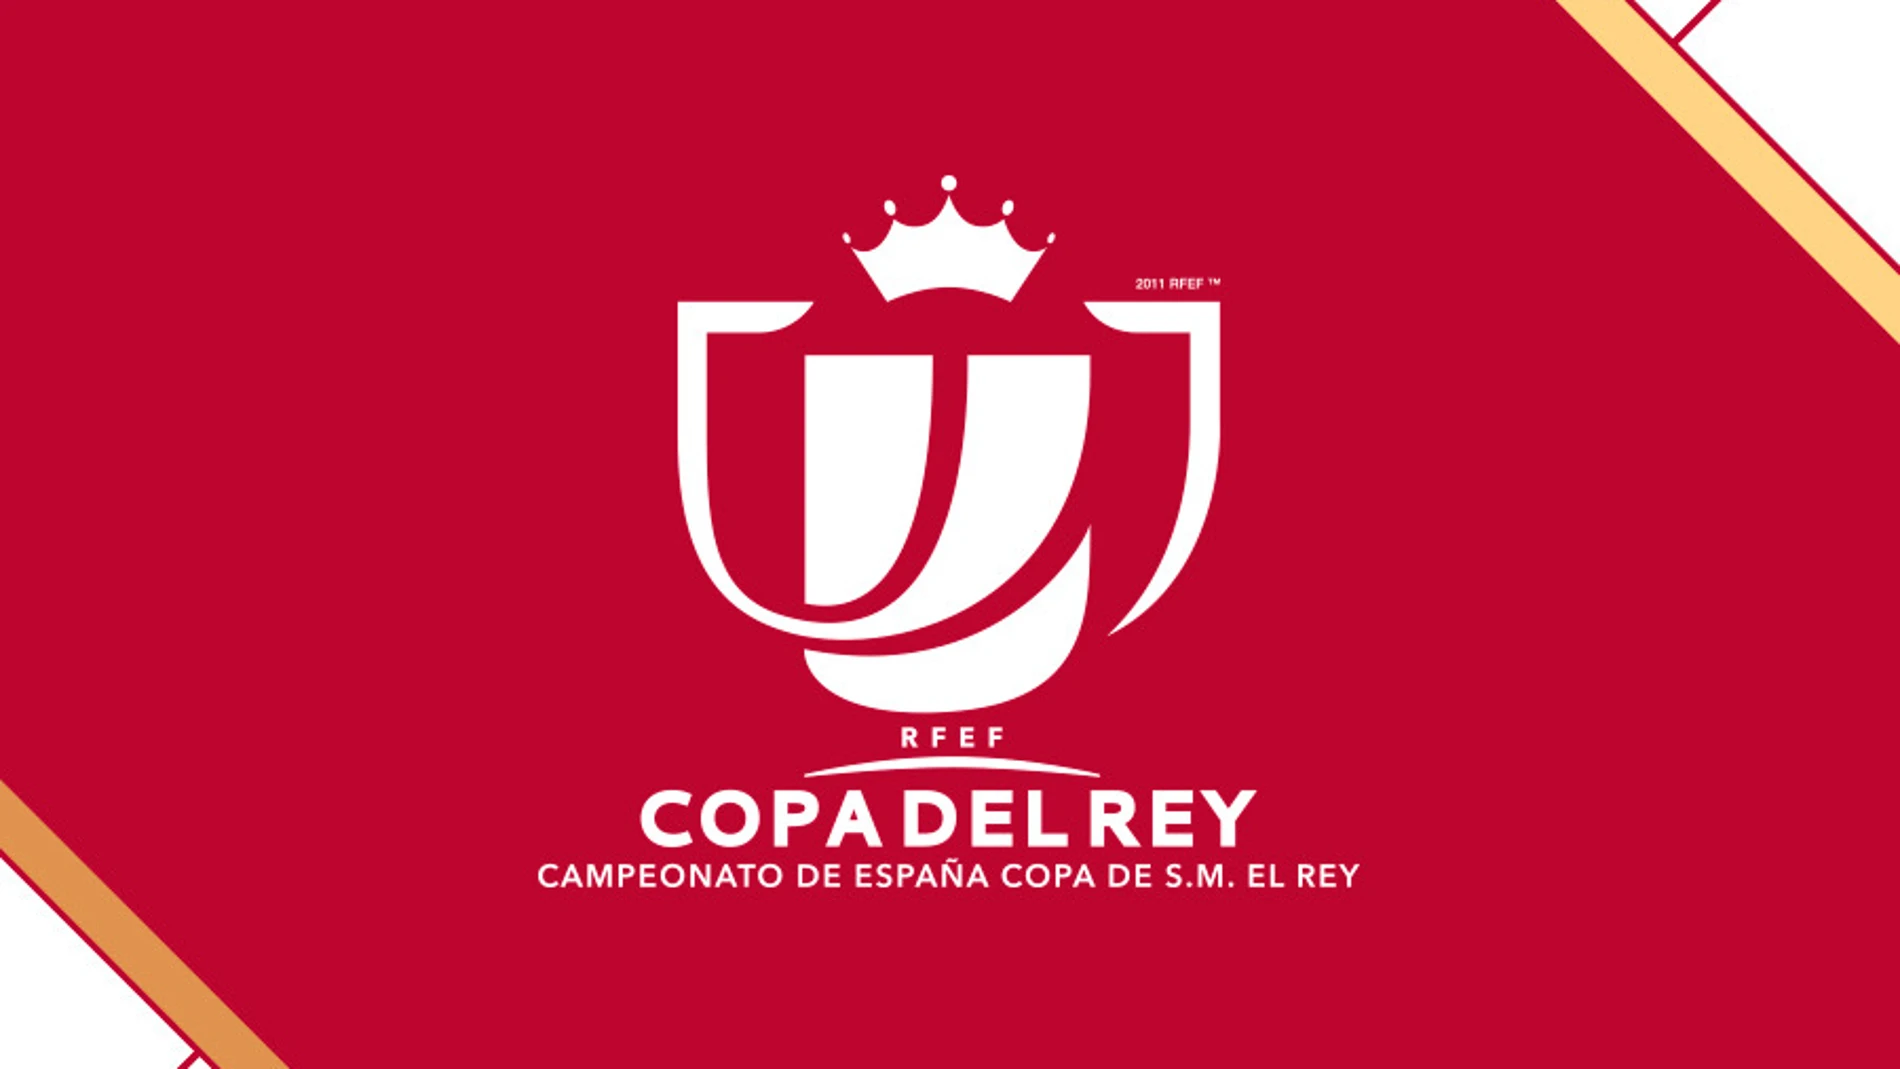 El logotipo de la Copa del Rey